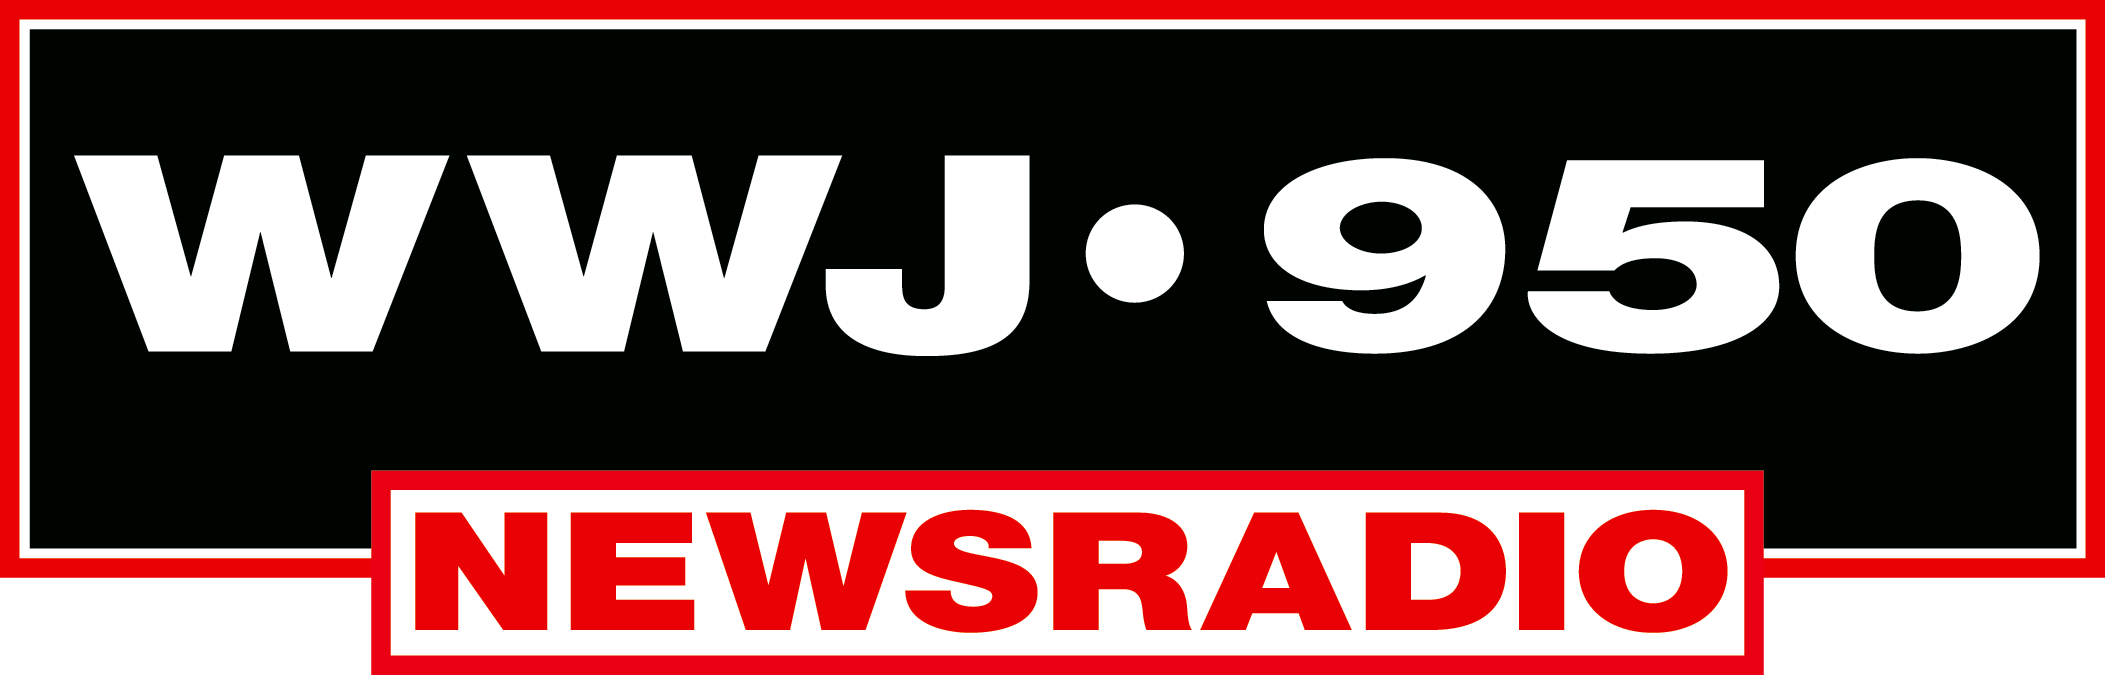 WWJ logo.png